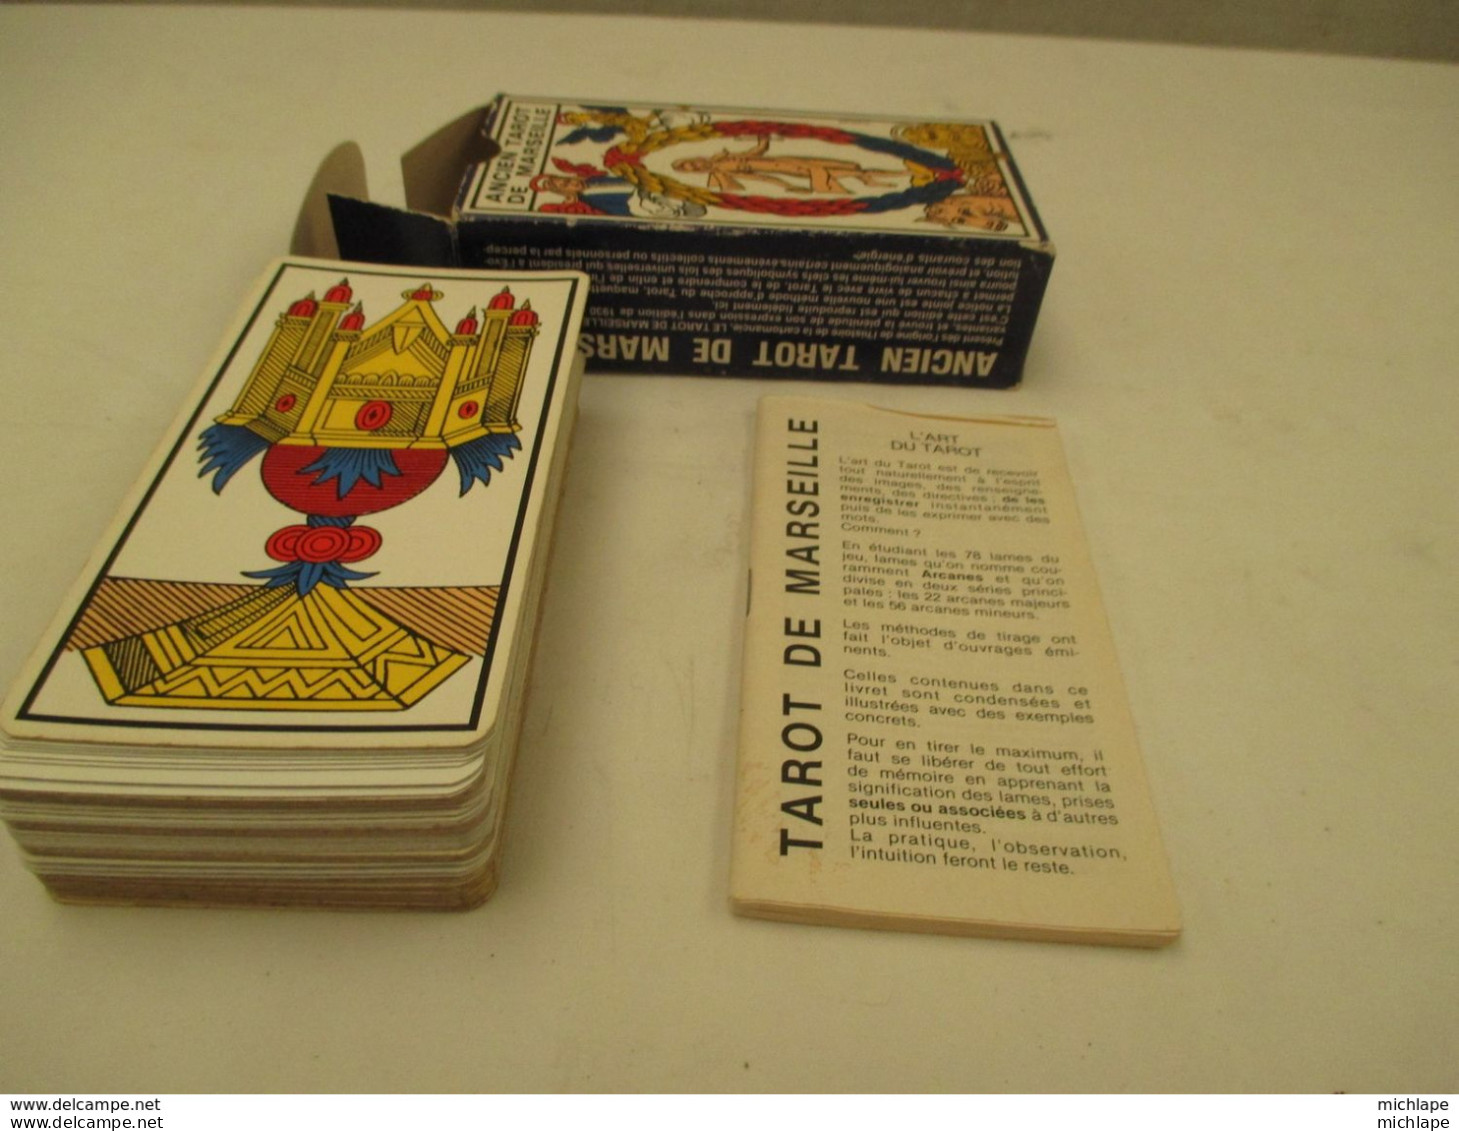 VOYANCE-CARTOMANCIE  jeu de TAROT DE MASEILLE 78 cartes   DIVINATOIRES de 12 cm sur 6 cm avec notice